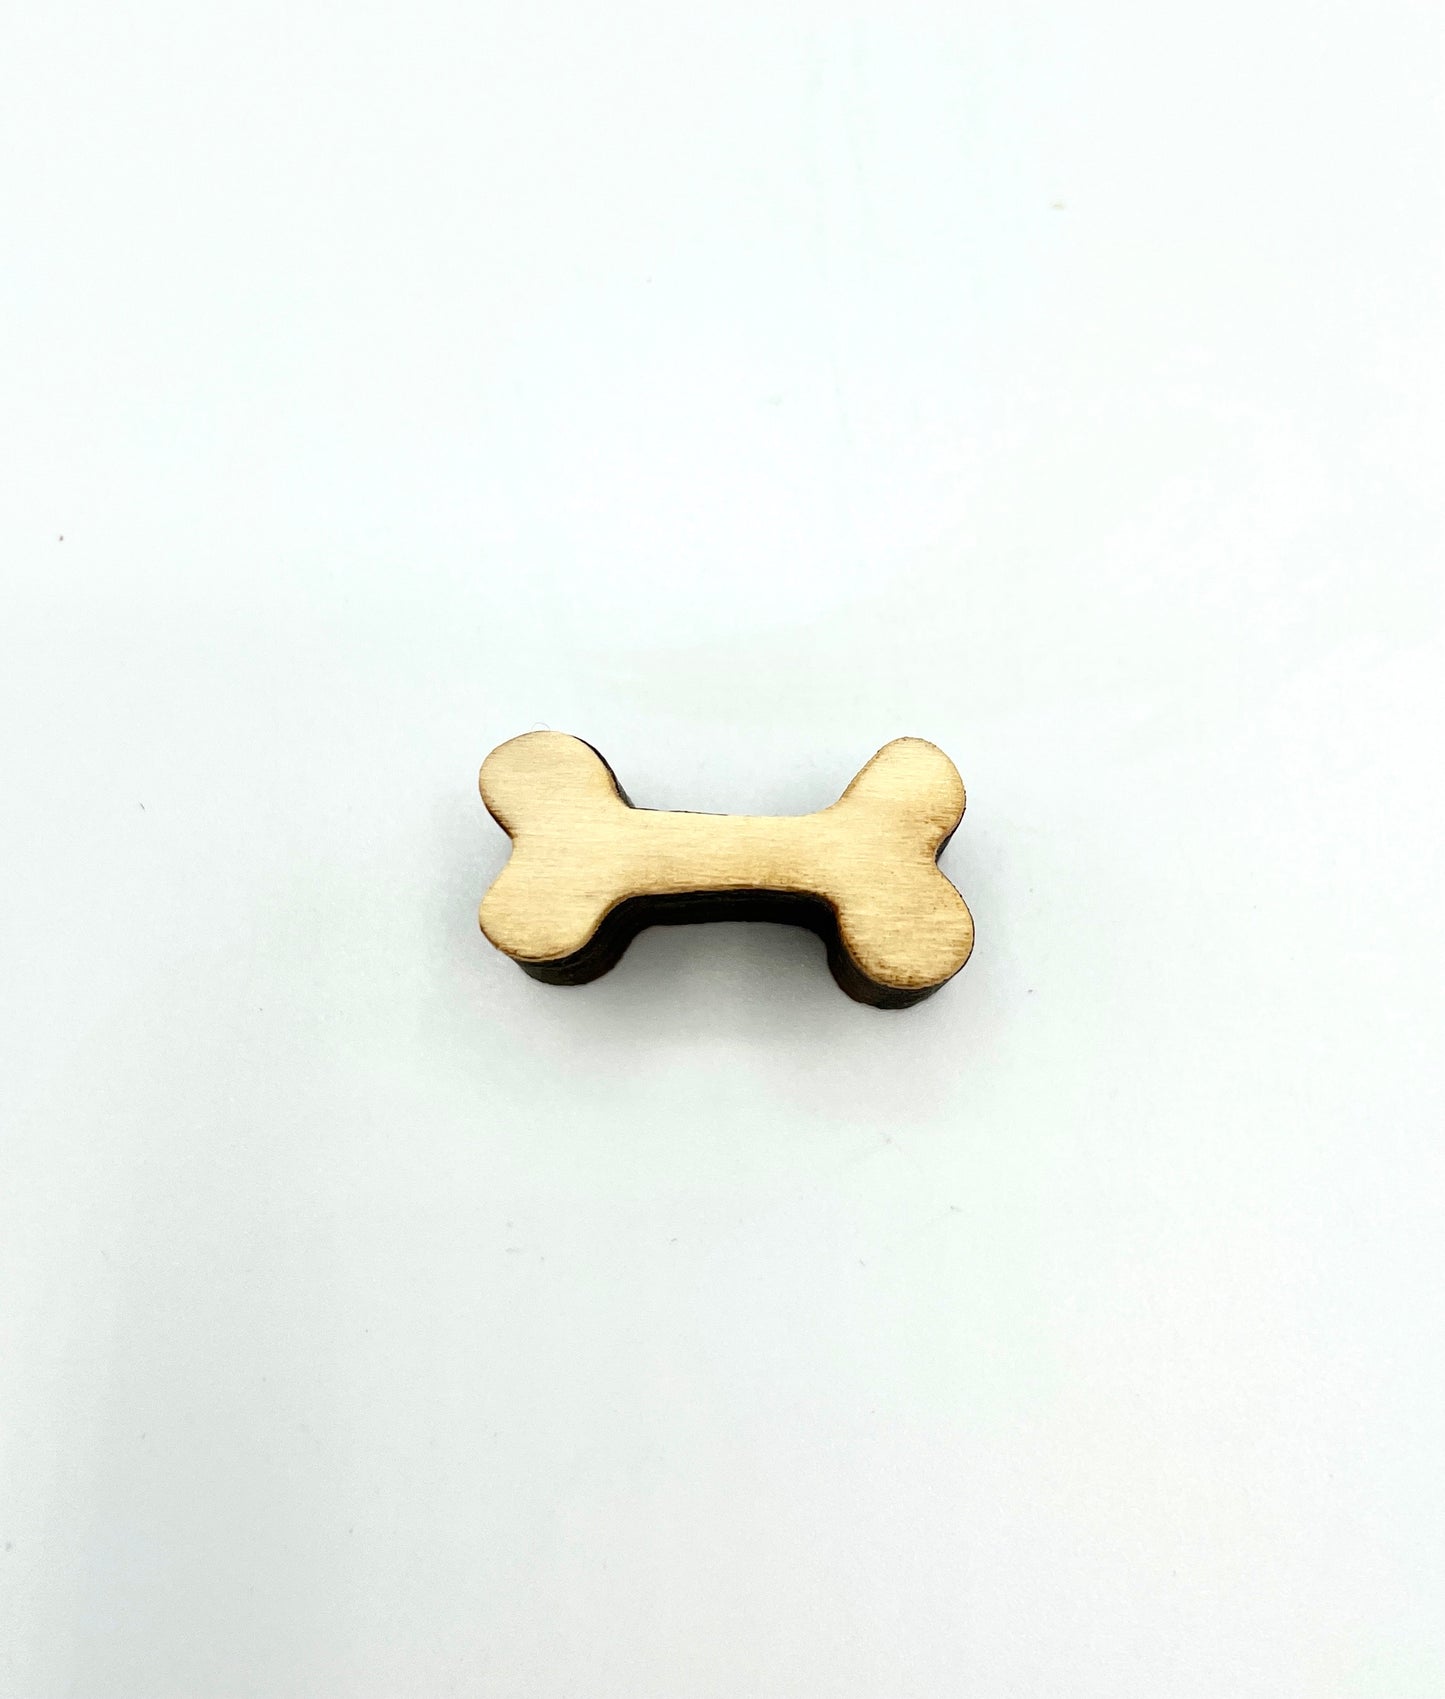 Dog bone- Stamp